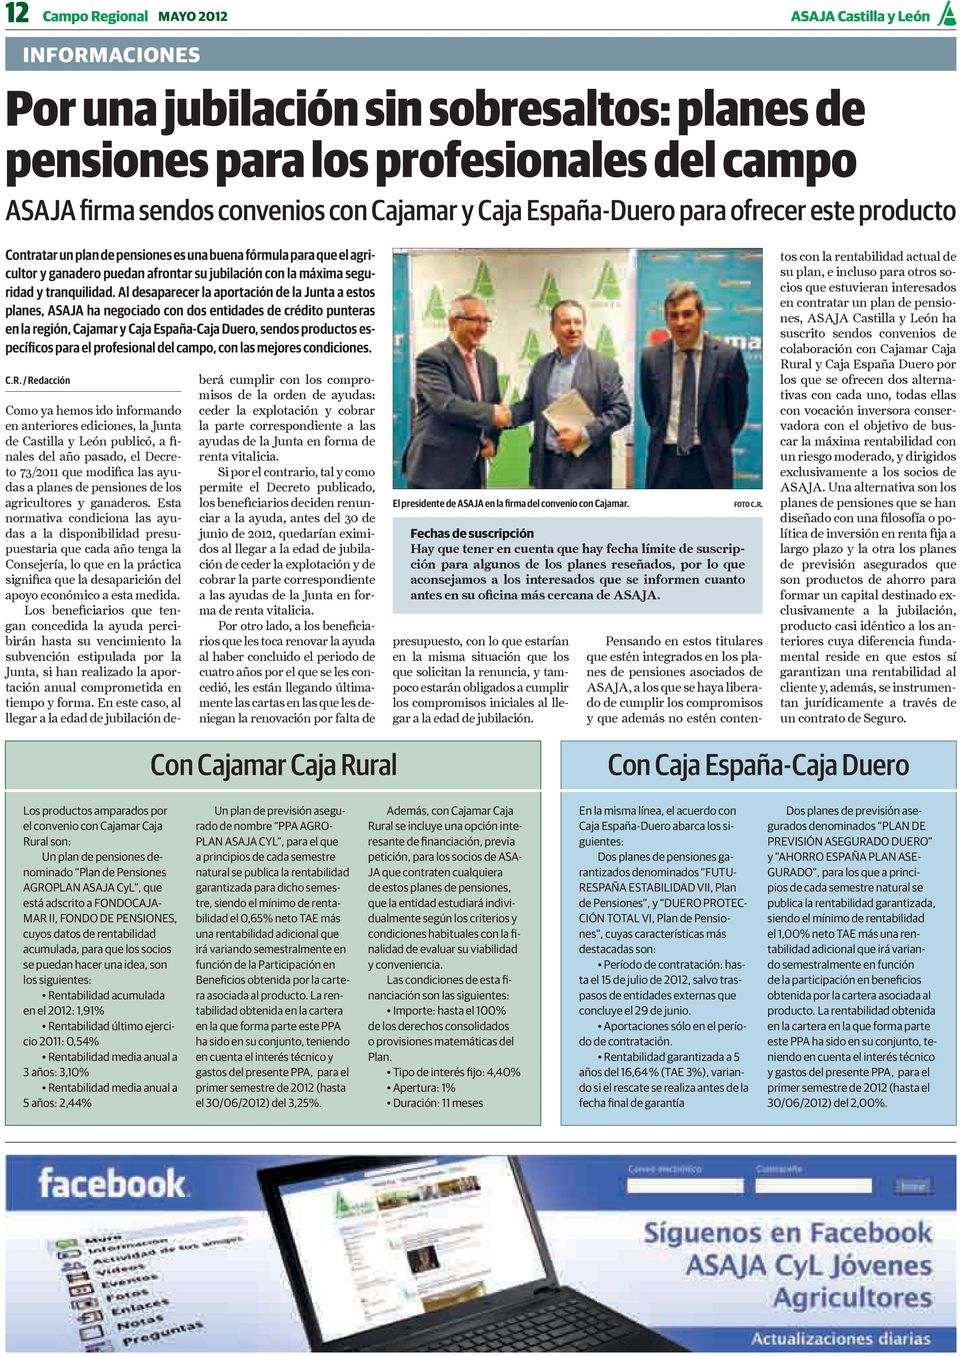 Al desaparecer la aportación de la Junta a estos planes, ASAJA ha negociado con dos entidades de crédito punteras en la región, Cajamar y Caja España-Caja Duero, sendos productos específicos para el